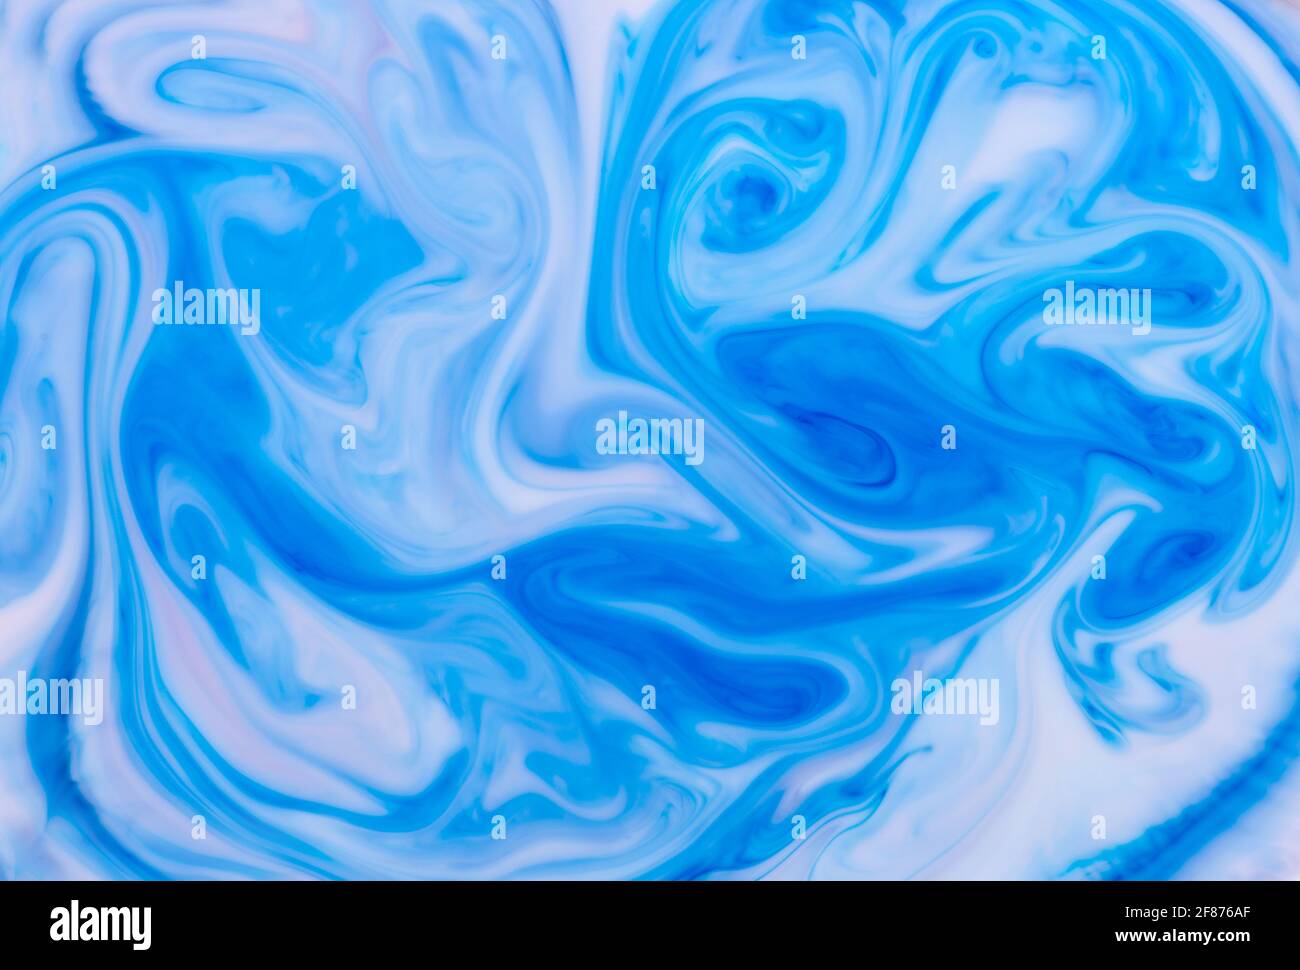 Arrière-plan abstrait des vagues d'encre bleue tourbillonnantes dans l'eau formant un motif monochromatique fluide artistique pour une utilisation en tant que modèle de conception Banque D'Images